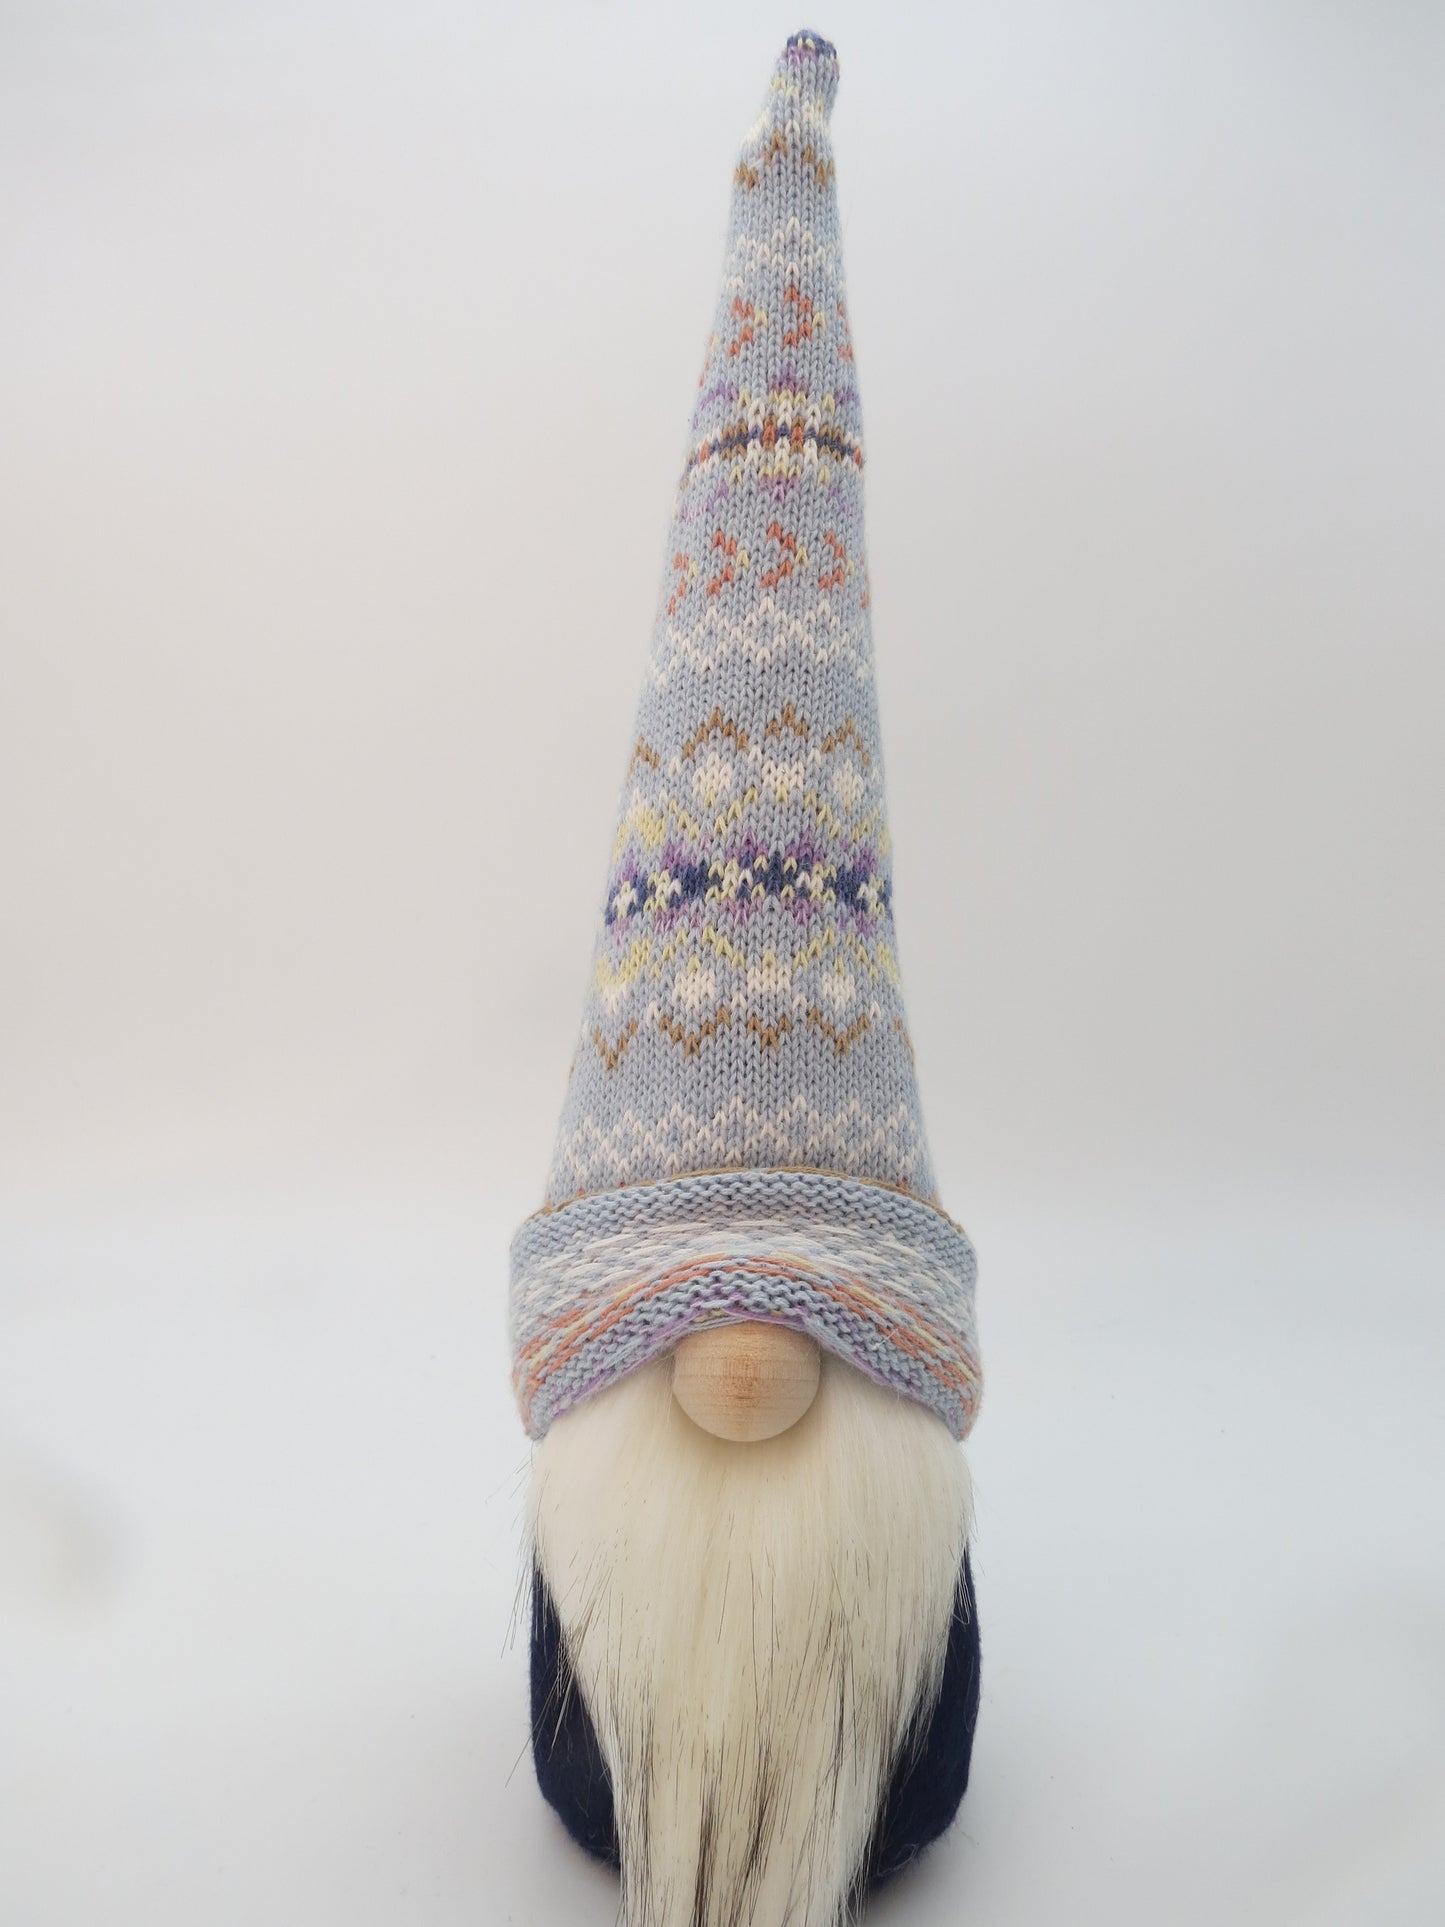 15" (38.1 cm) Medium Gnome (6041) - Light Blue with Multi Colour